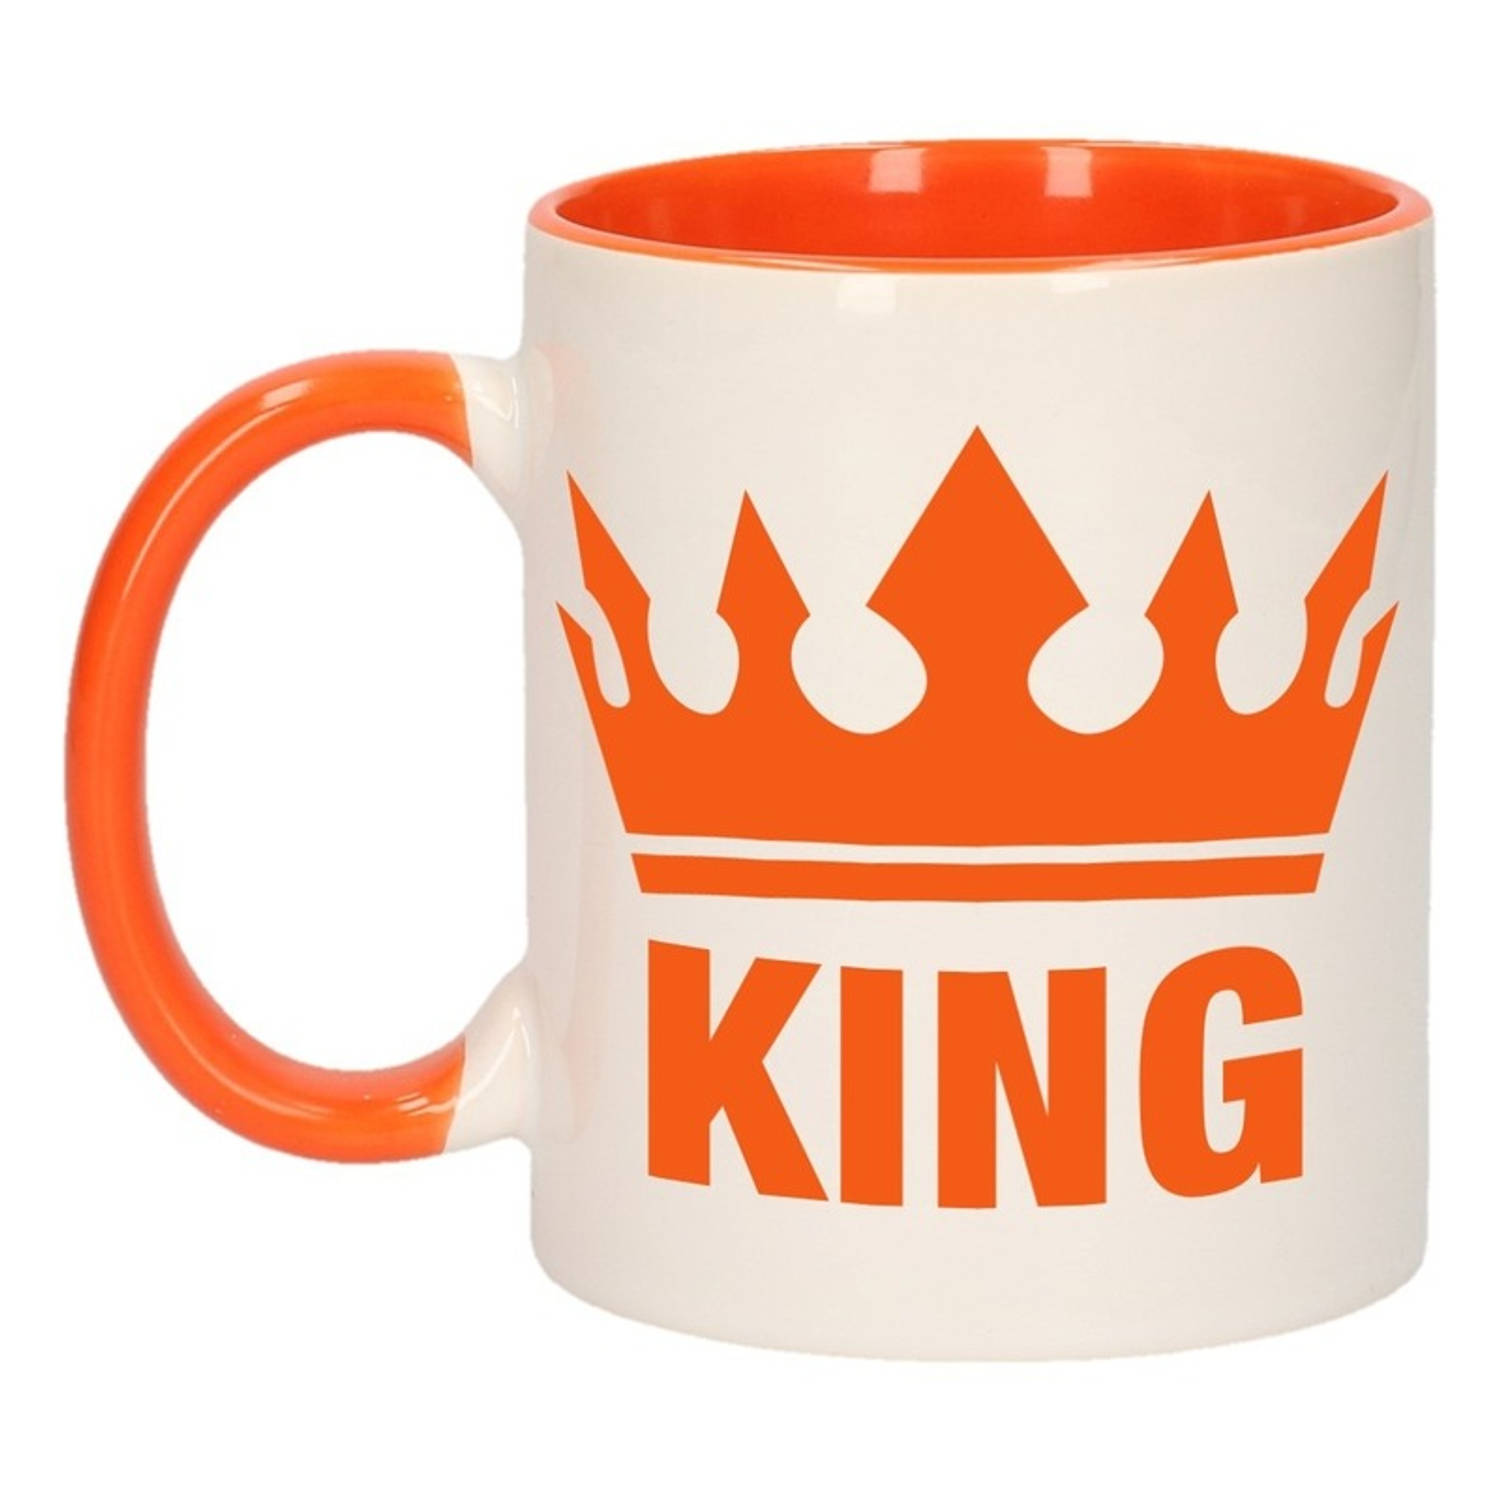 Koningsdag 1x Koningsdag King beker-mok oranje met wit 300 ml keramiek oranje bekers